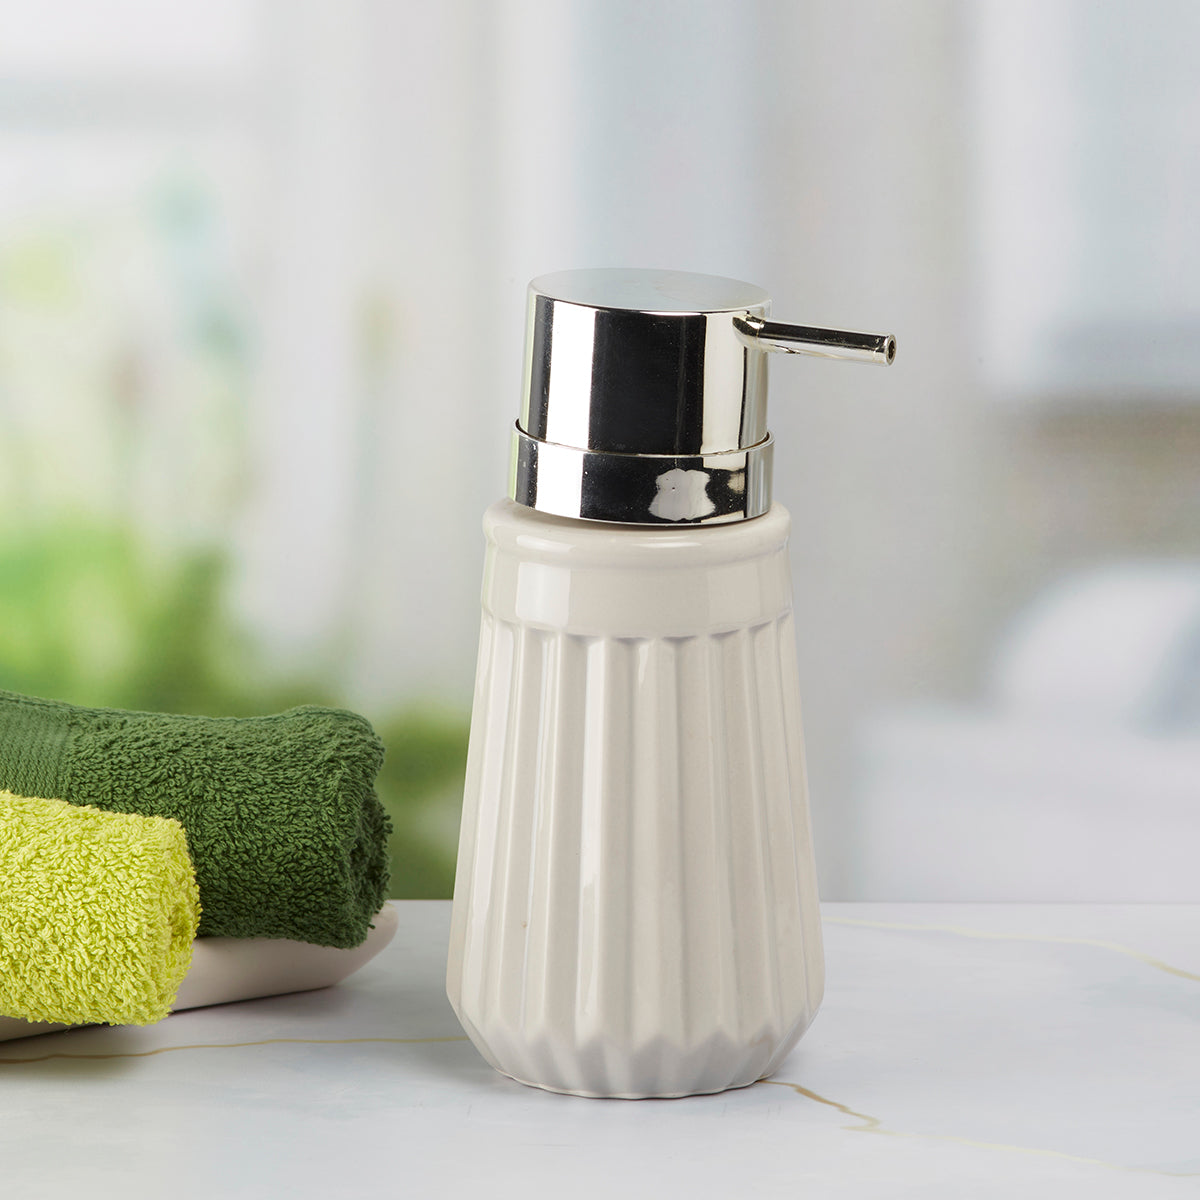 Kookee Ceramic Soap Dispenser for Bathroom handwash, refillable pump bottle for Kitchen hand wash basin, Set of 1, Grey (7983)